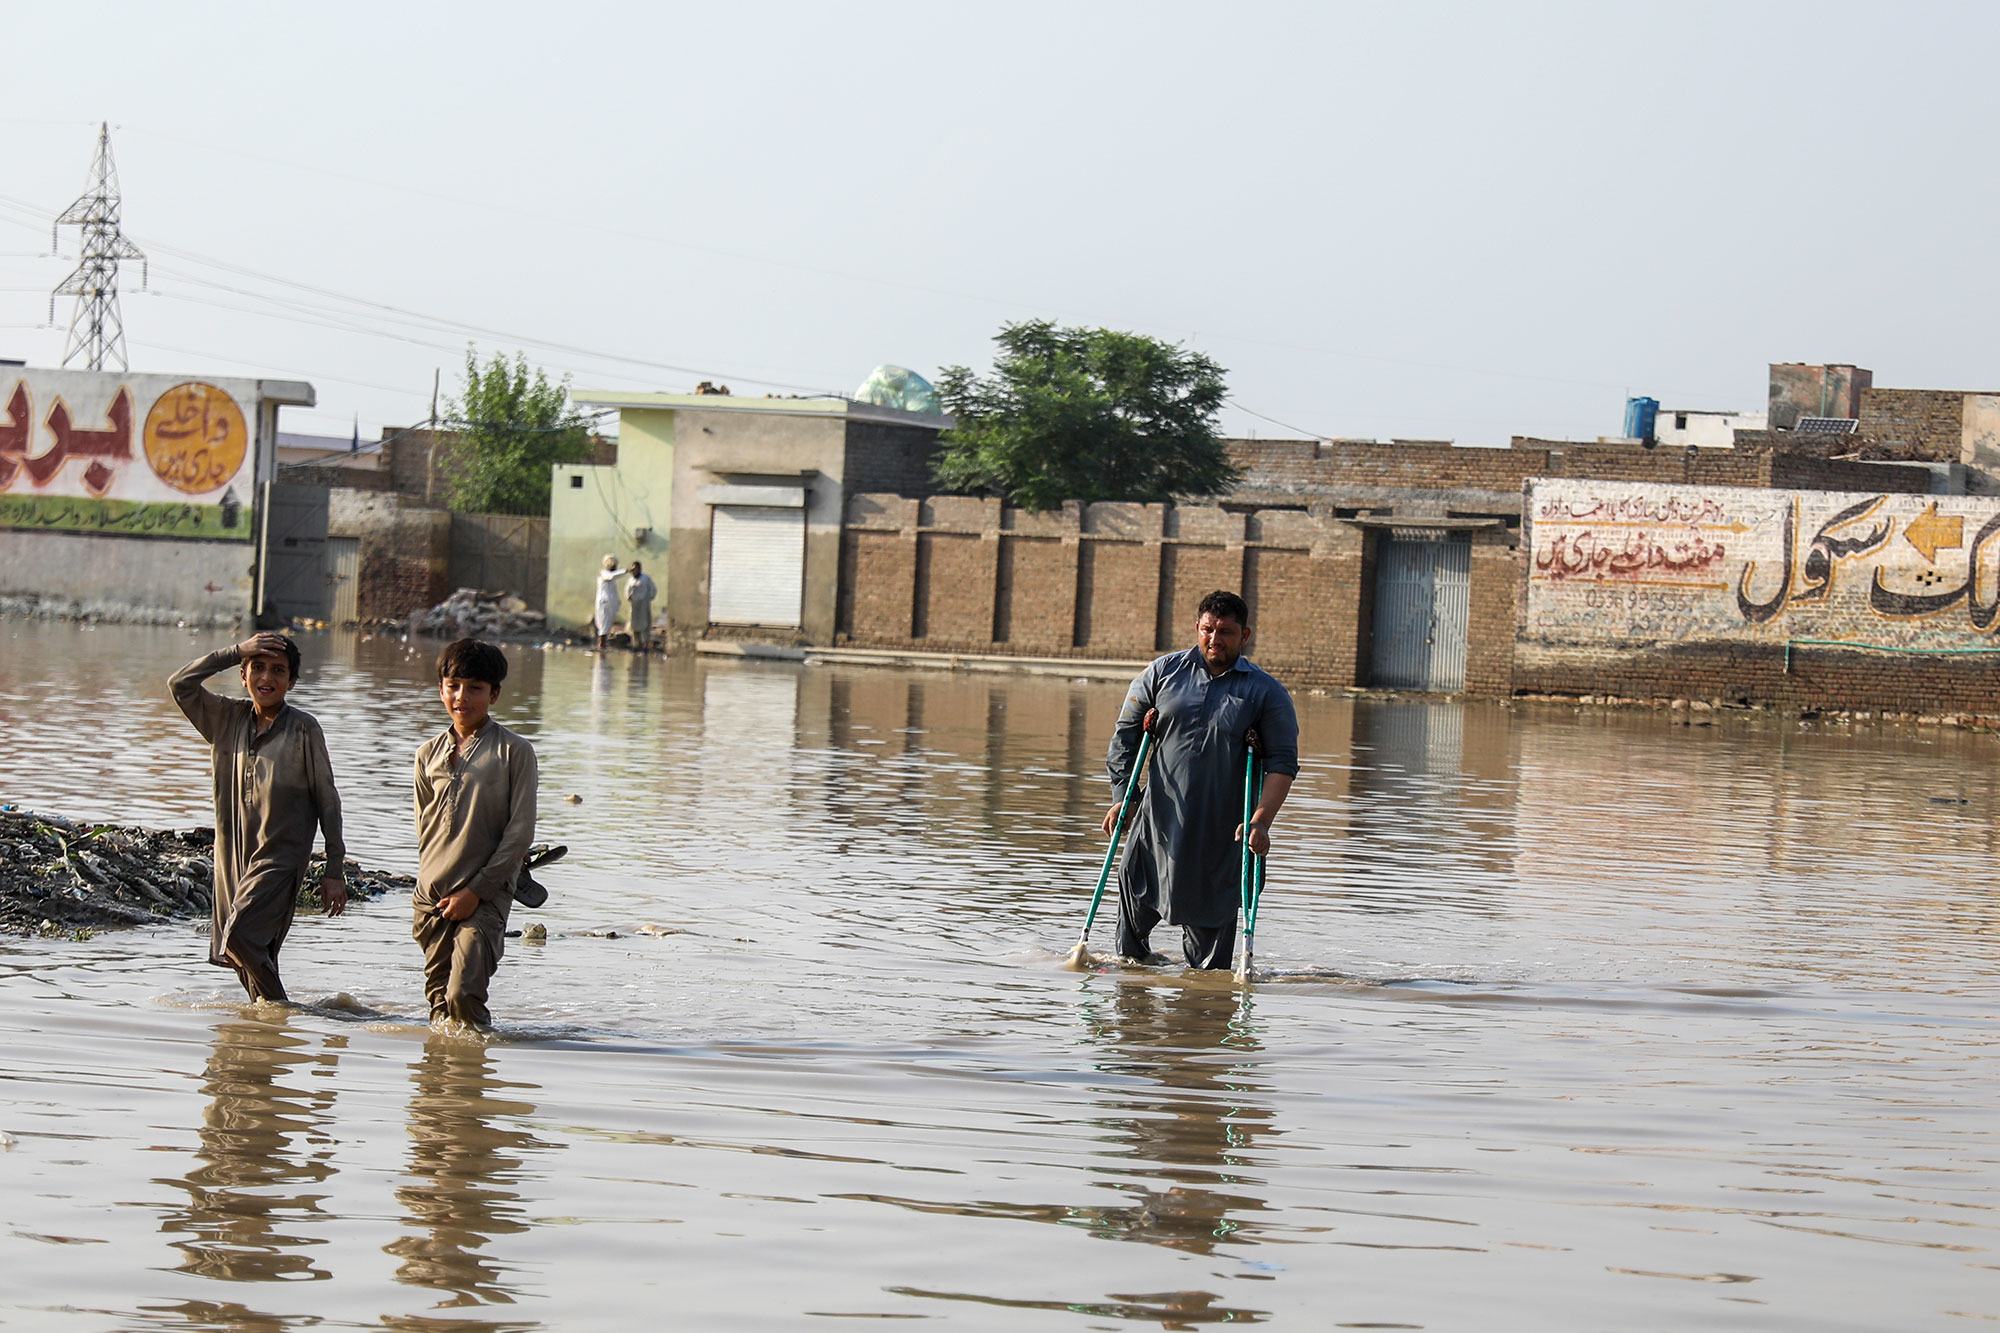 ناوشيرا كالان، واحدة من أكثر المناطق تضرراً في إقليم خيبر باختونخوا في باكستان والتي غمرتها المياه.